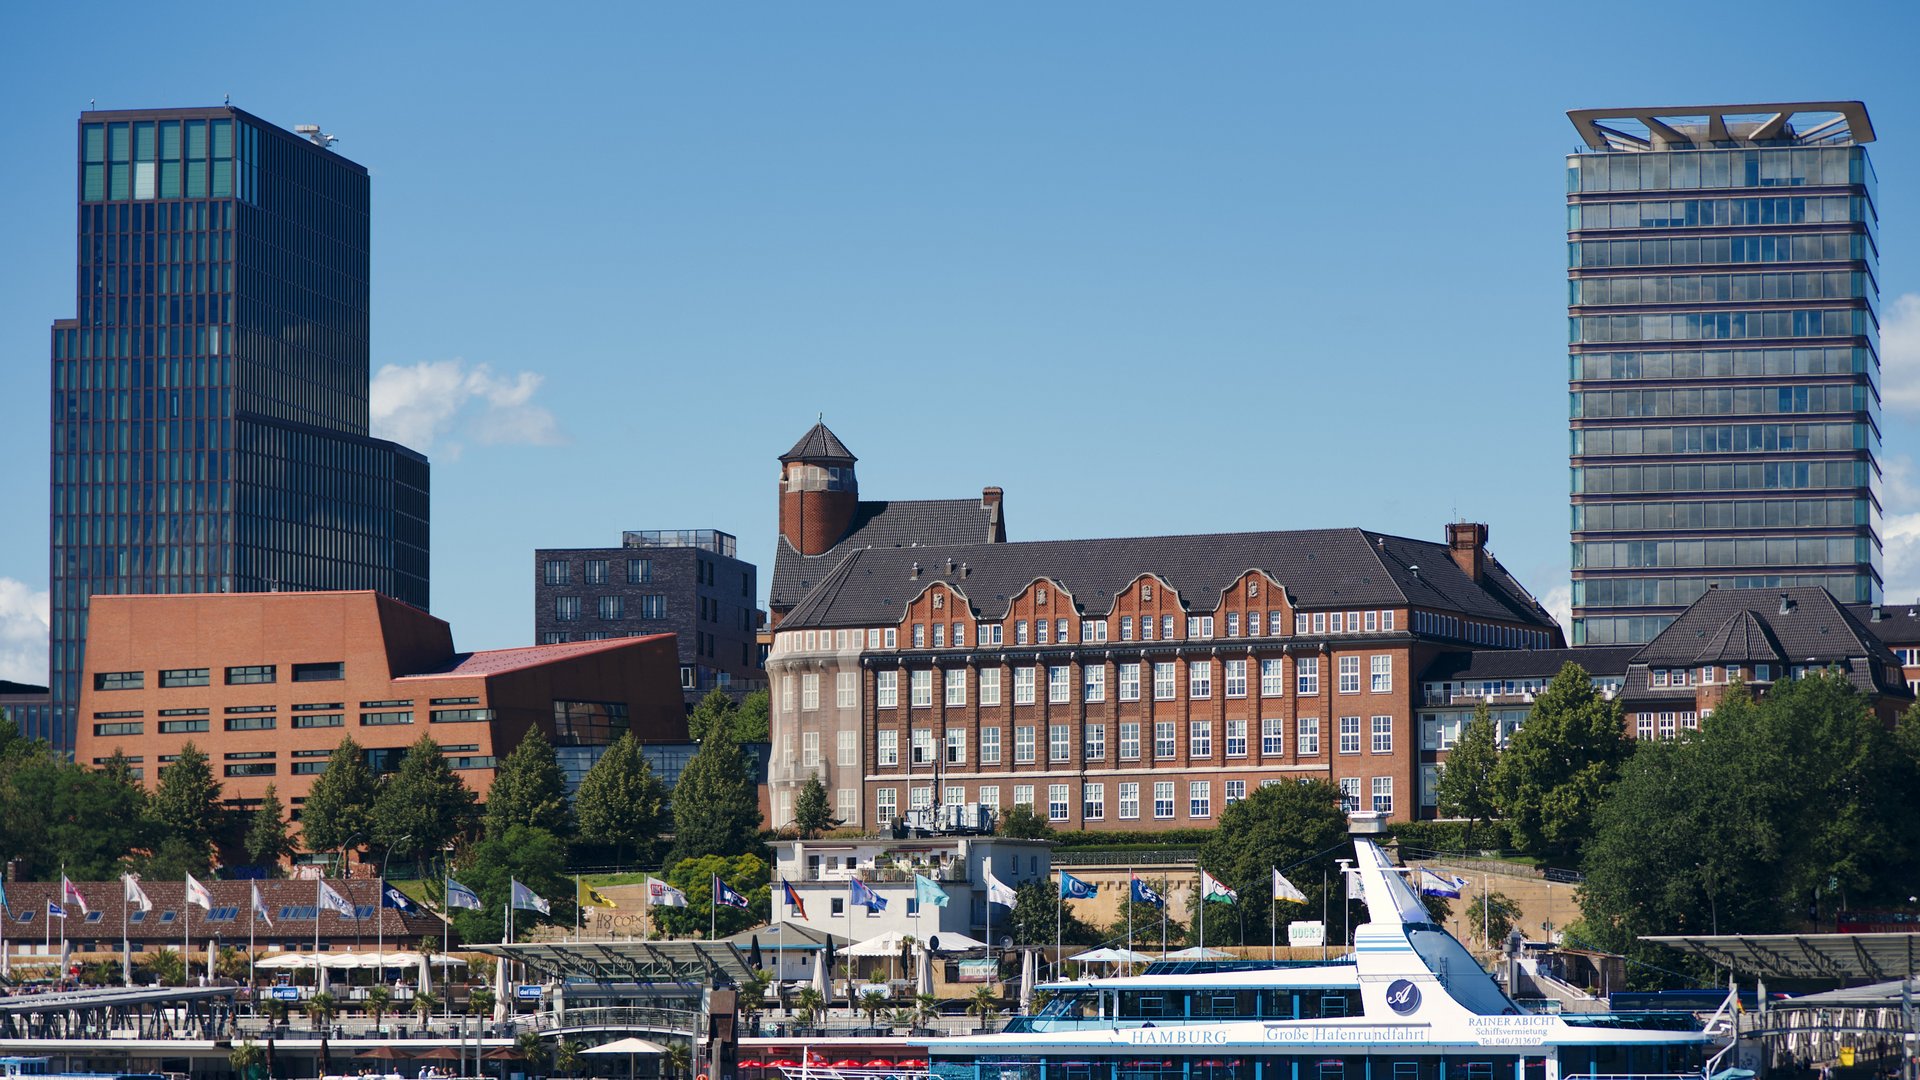 Die Institutsgebäude im hamburger Hafen vor blauem Himmel.